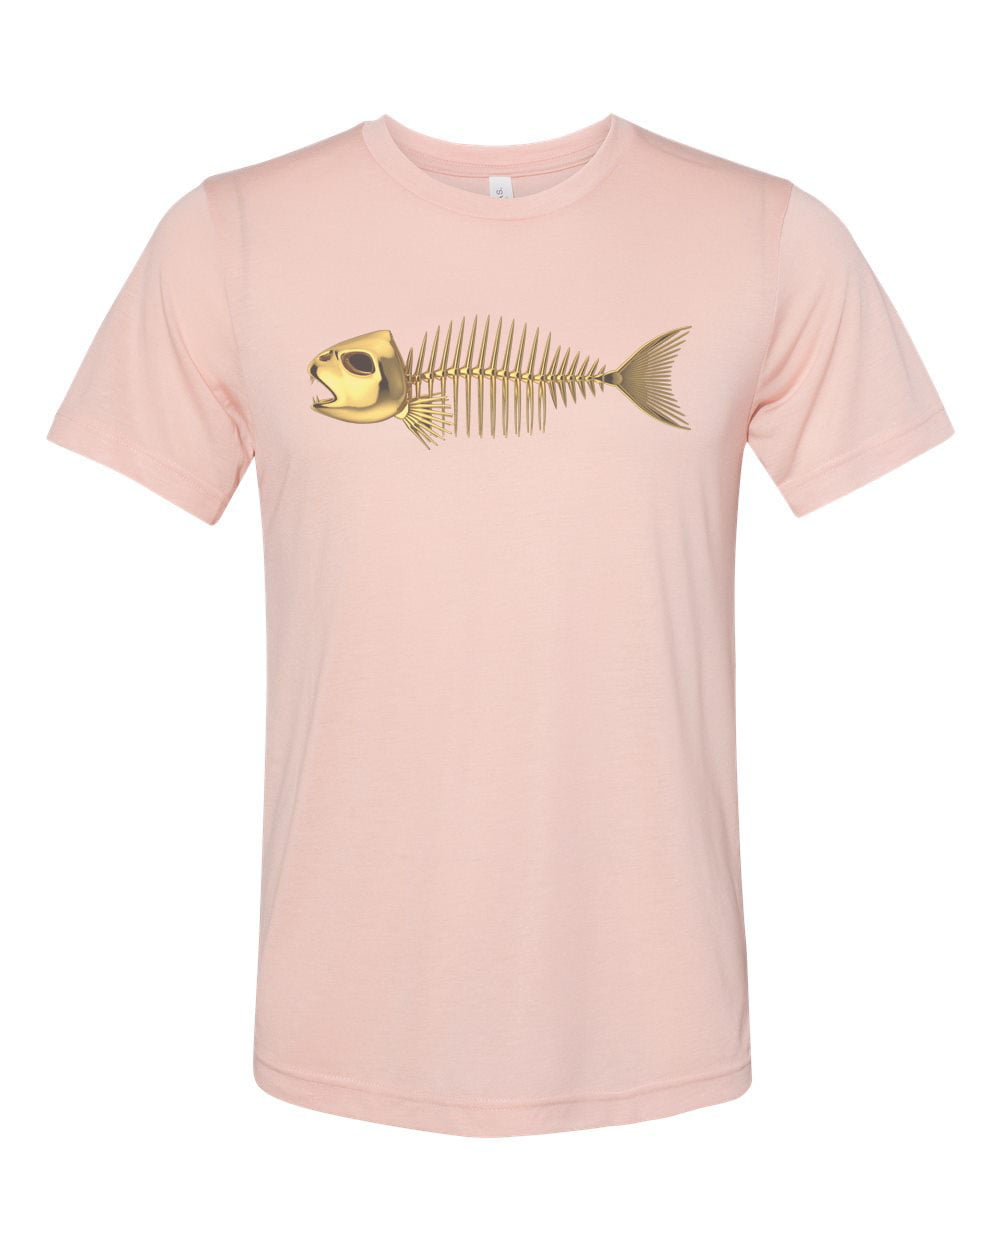 Fish Shirt, Fish Skeleton, Fish Bones, Unisex, Sublimation T, Fish